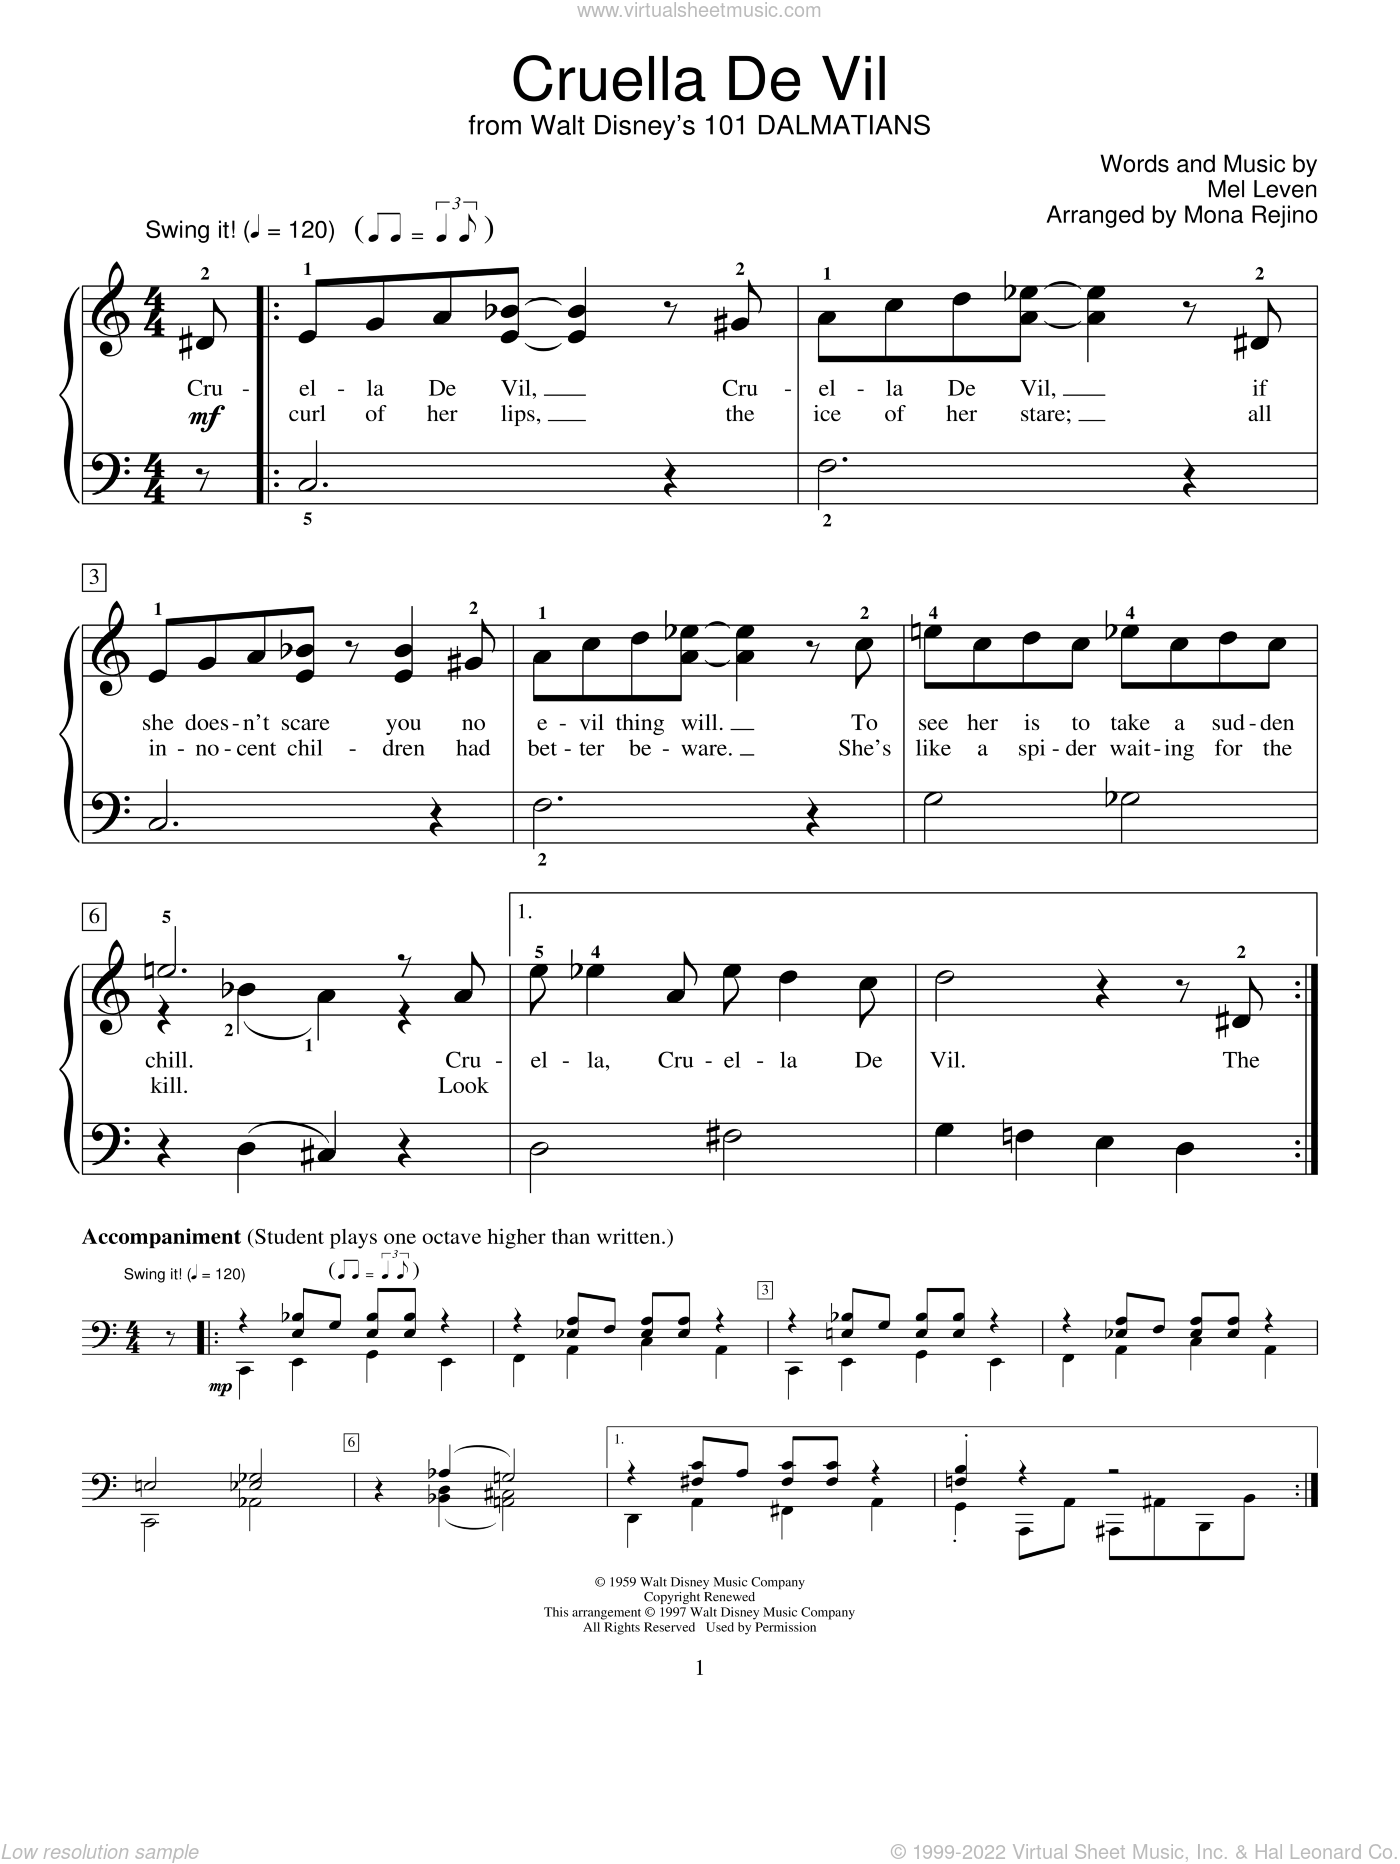 Rejino Cruella De Vil Sheet Music For Piano Solo Elementary - roblox piano christmas song